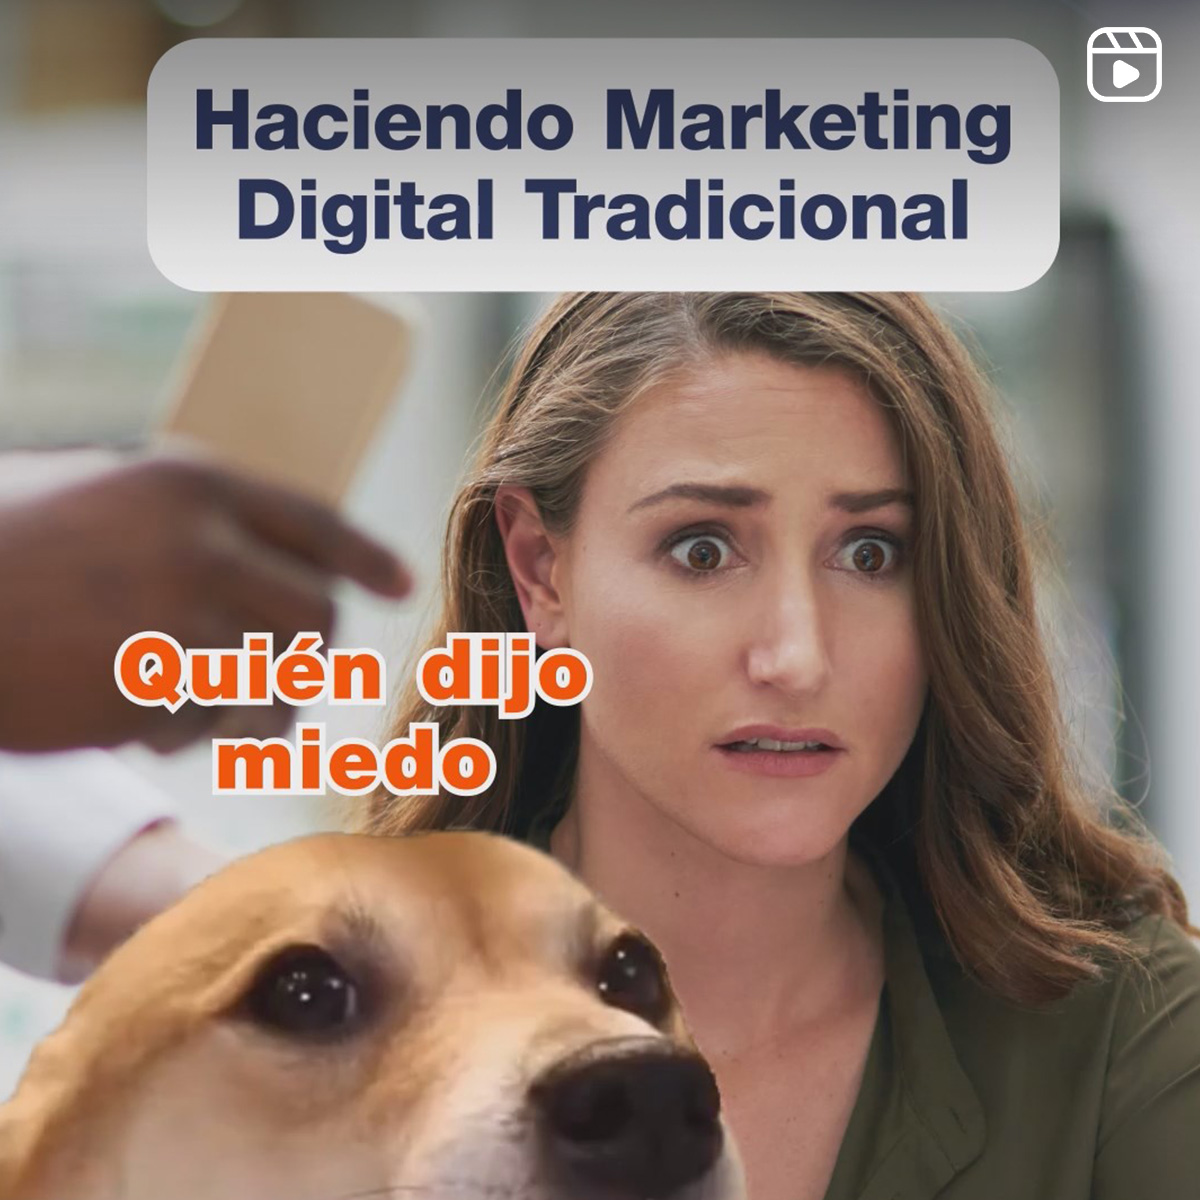 Haciendo Marketing Digital Tradicional